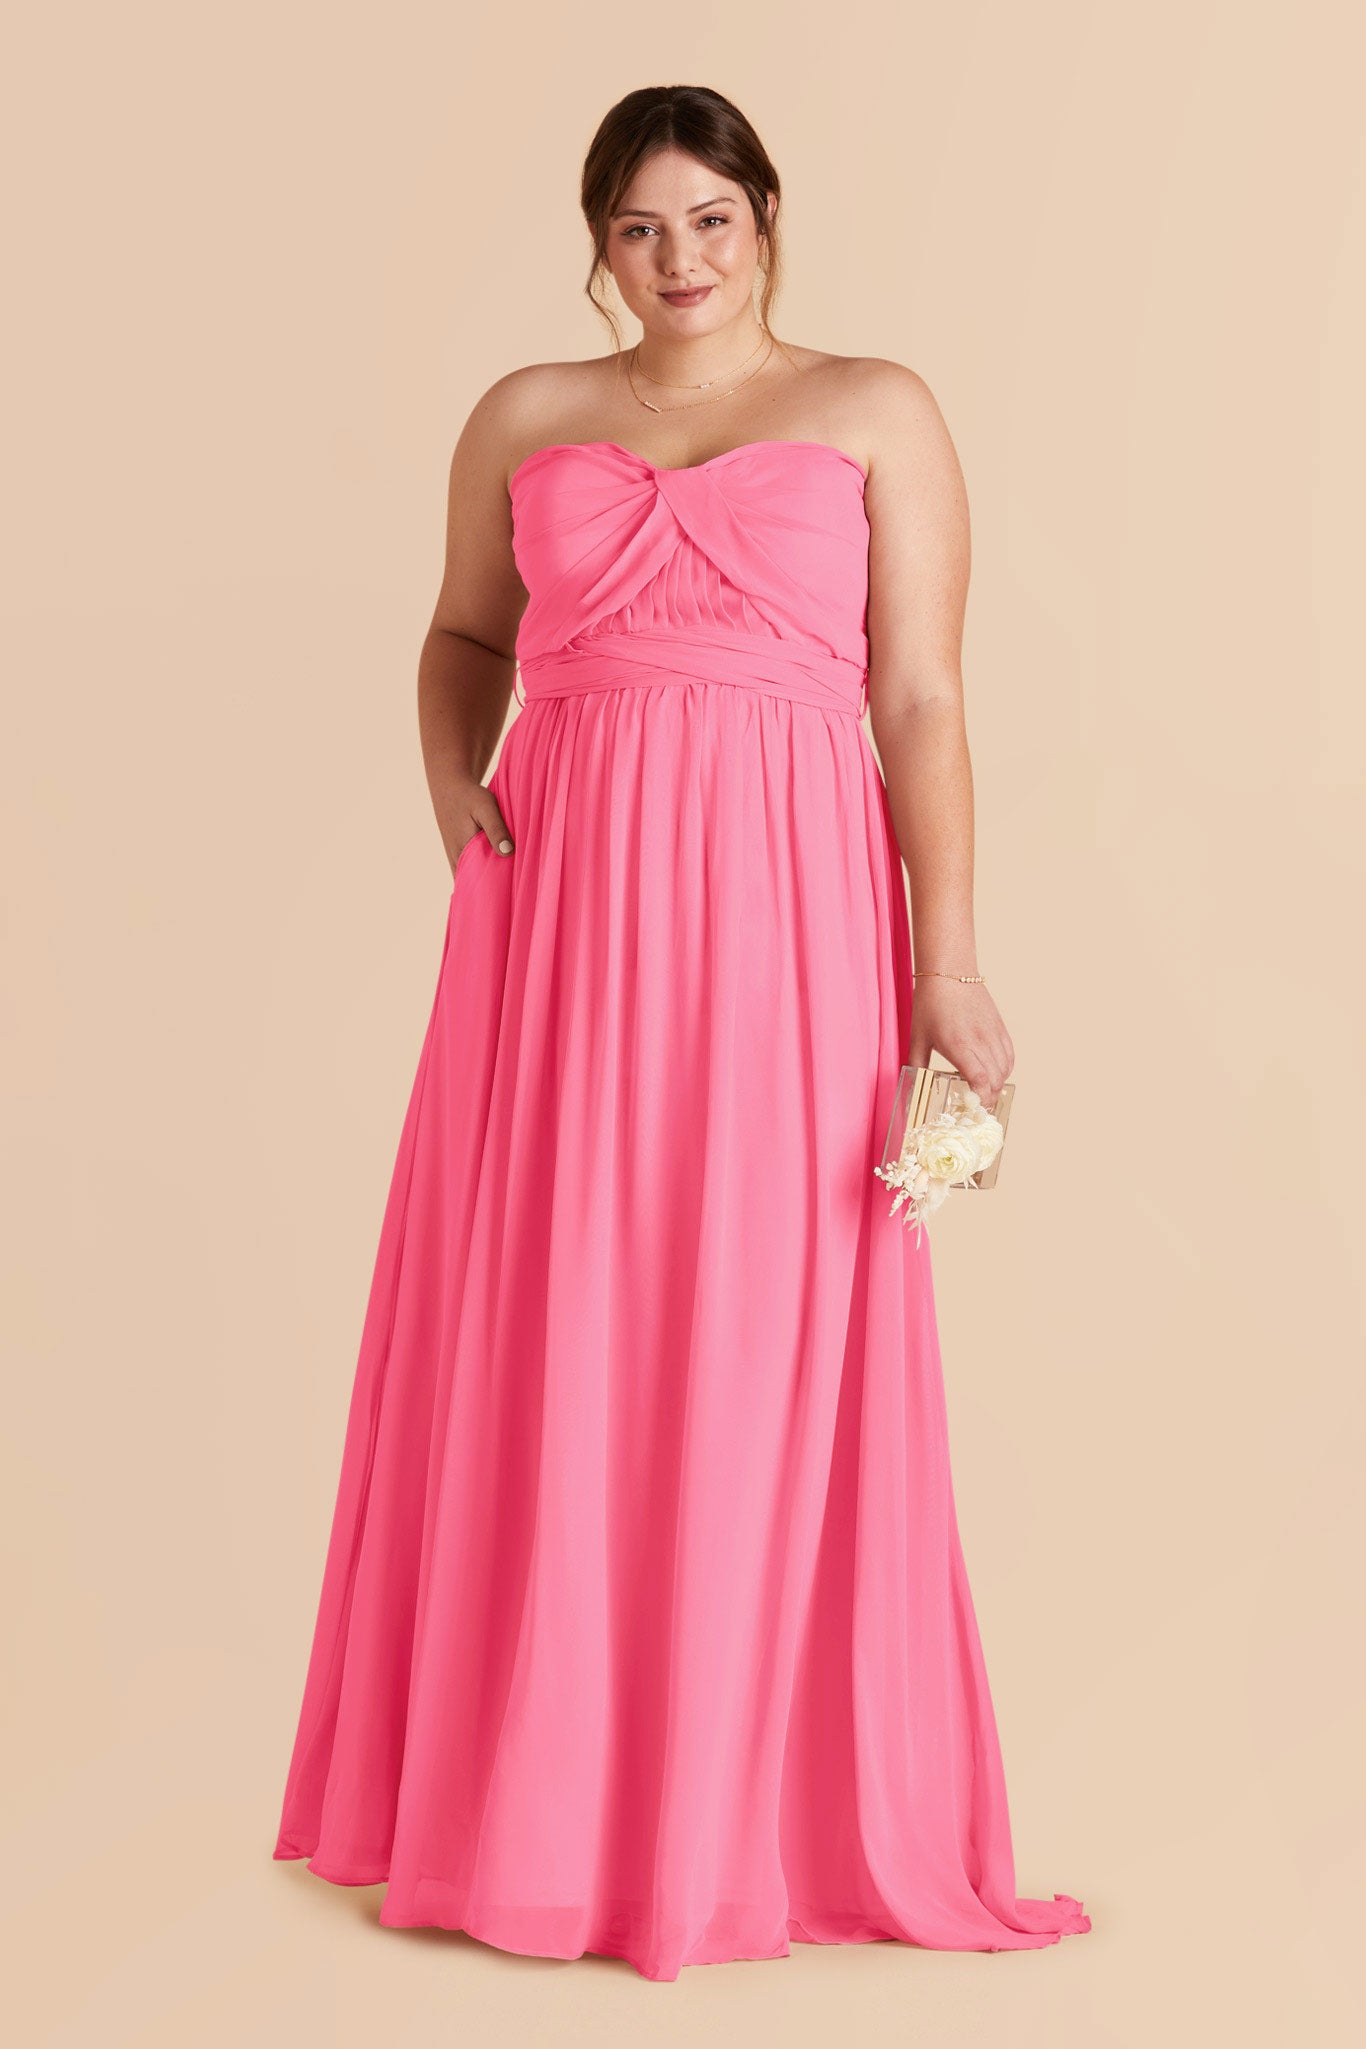 Bon Bon Pink Grace Convertible Dress by Birdy Grey